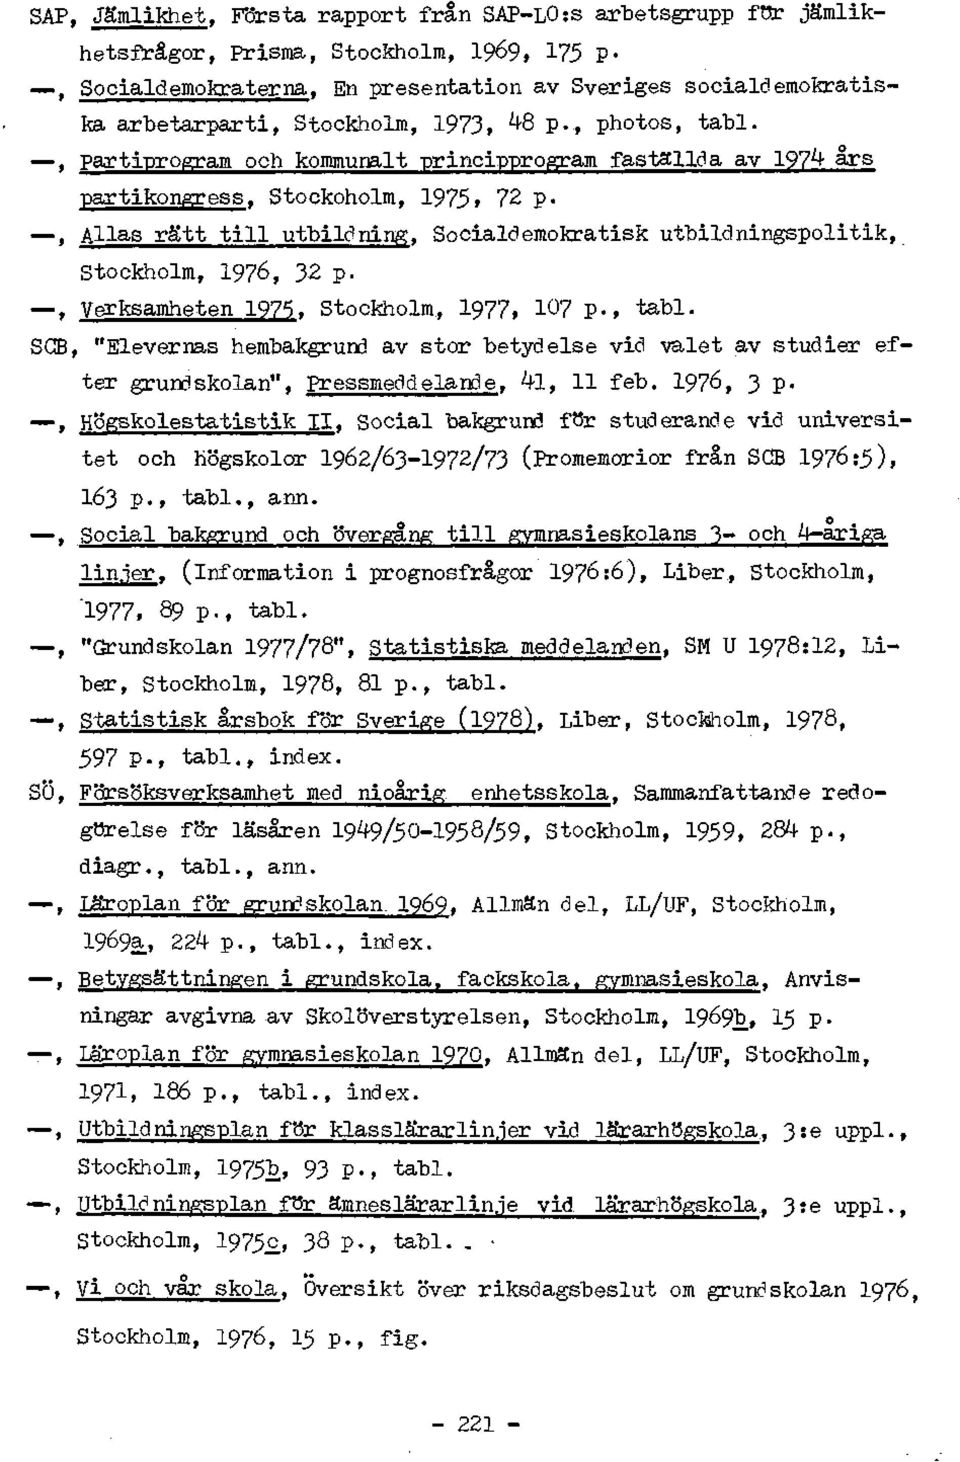 , Allas ratt till utbildning, Socialdemokratisk utbildningspolitik, Stockholm, 1976, 32 p., Verksamheten 1975. Stockholm, I977, 107 P-, tabl.